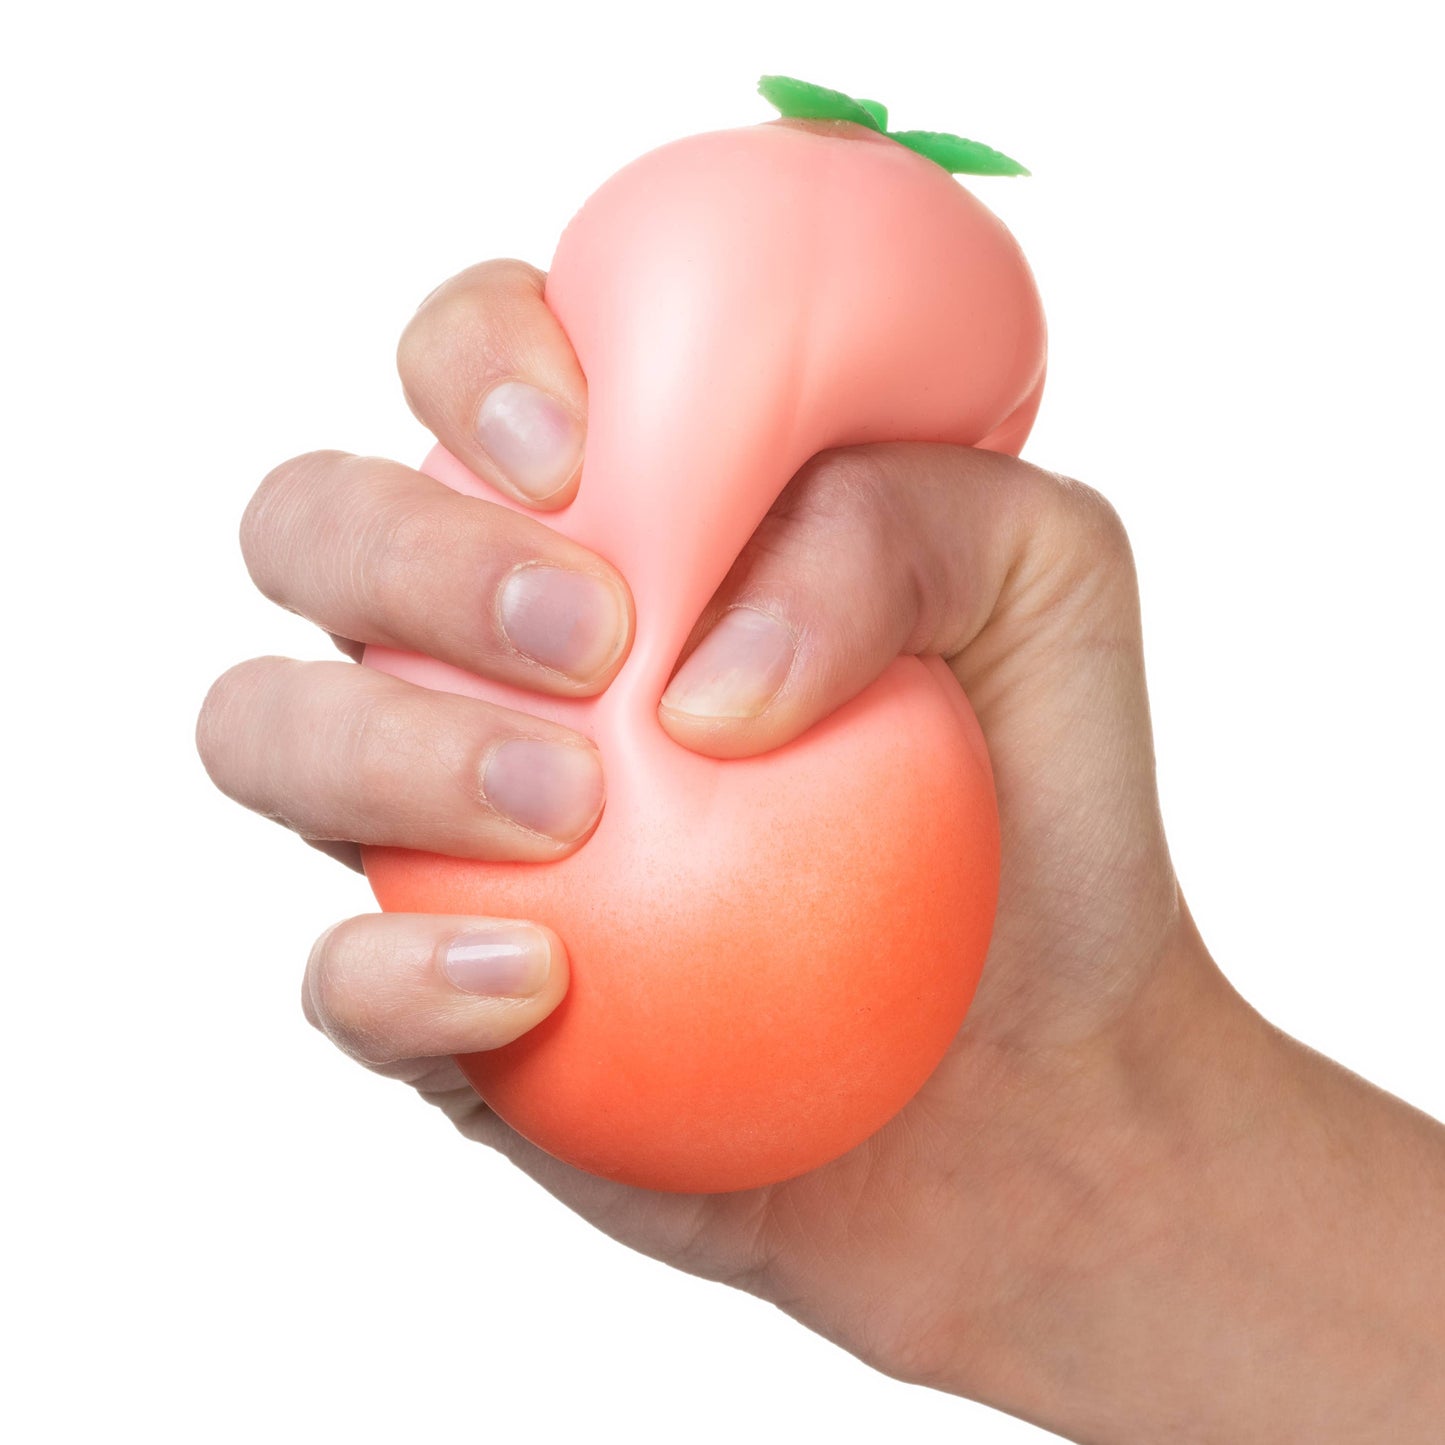 Just Peachy! Cute Peach Stress Ball - Georgia Peach